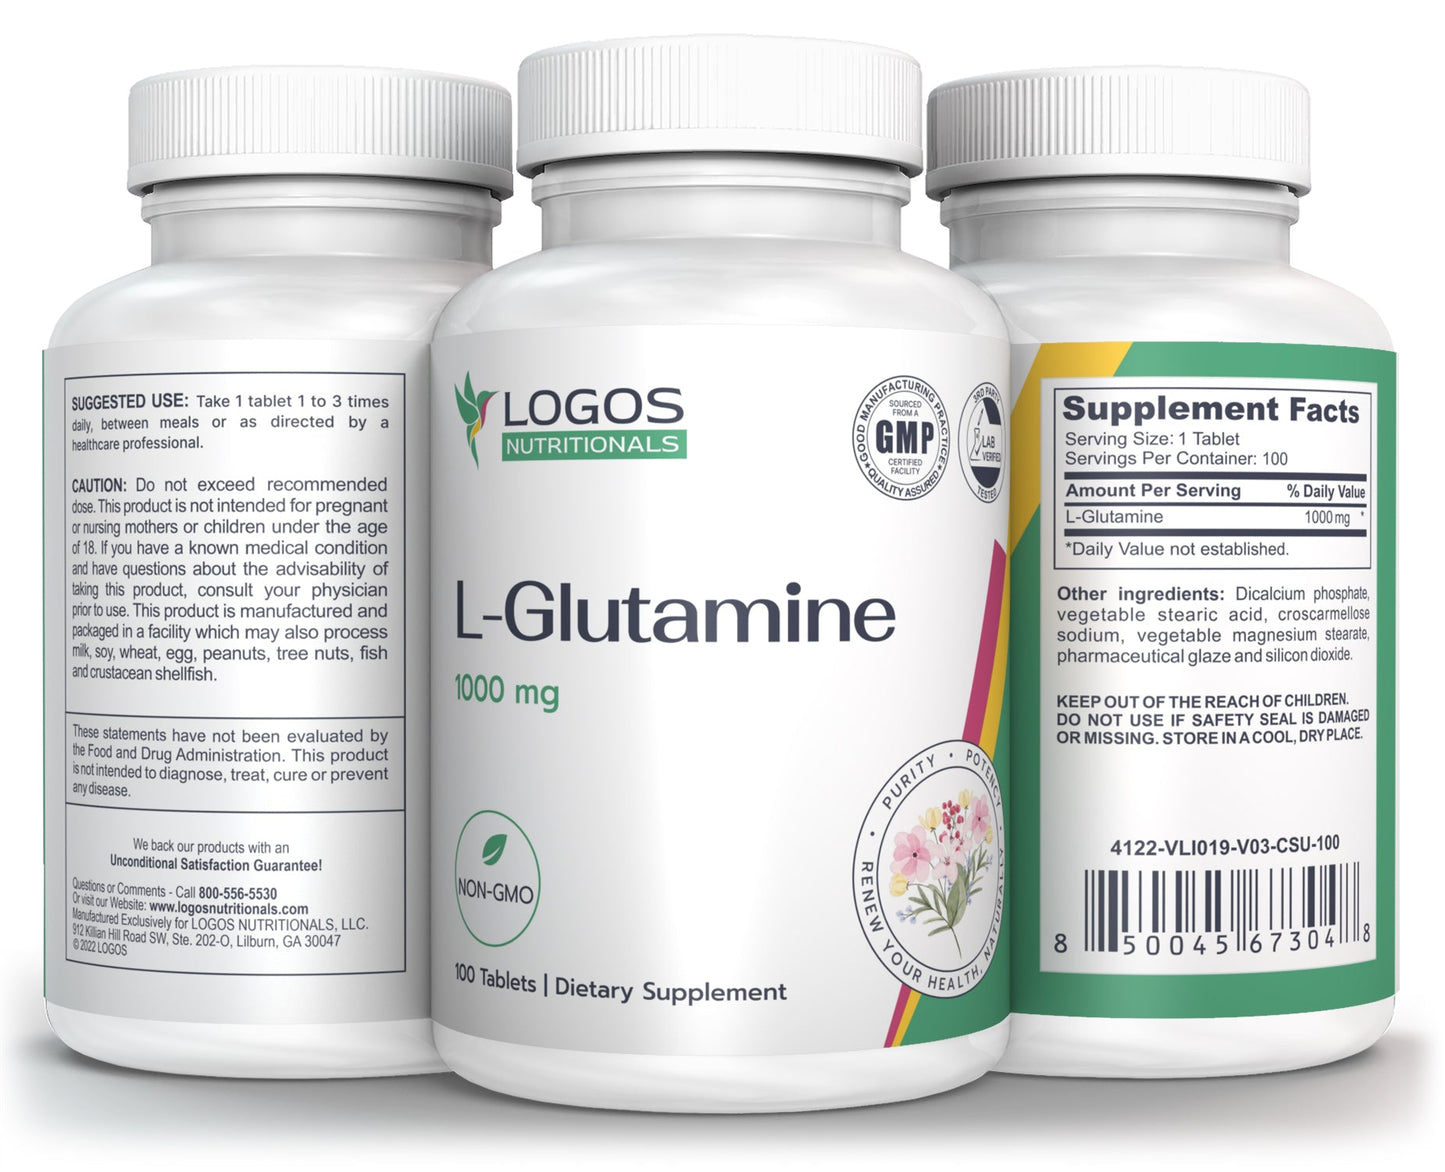 Logos Nutritionals_L-GLUTAMINE